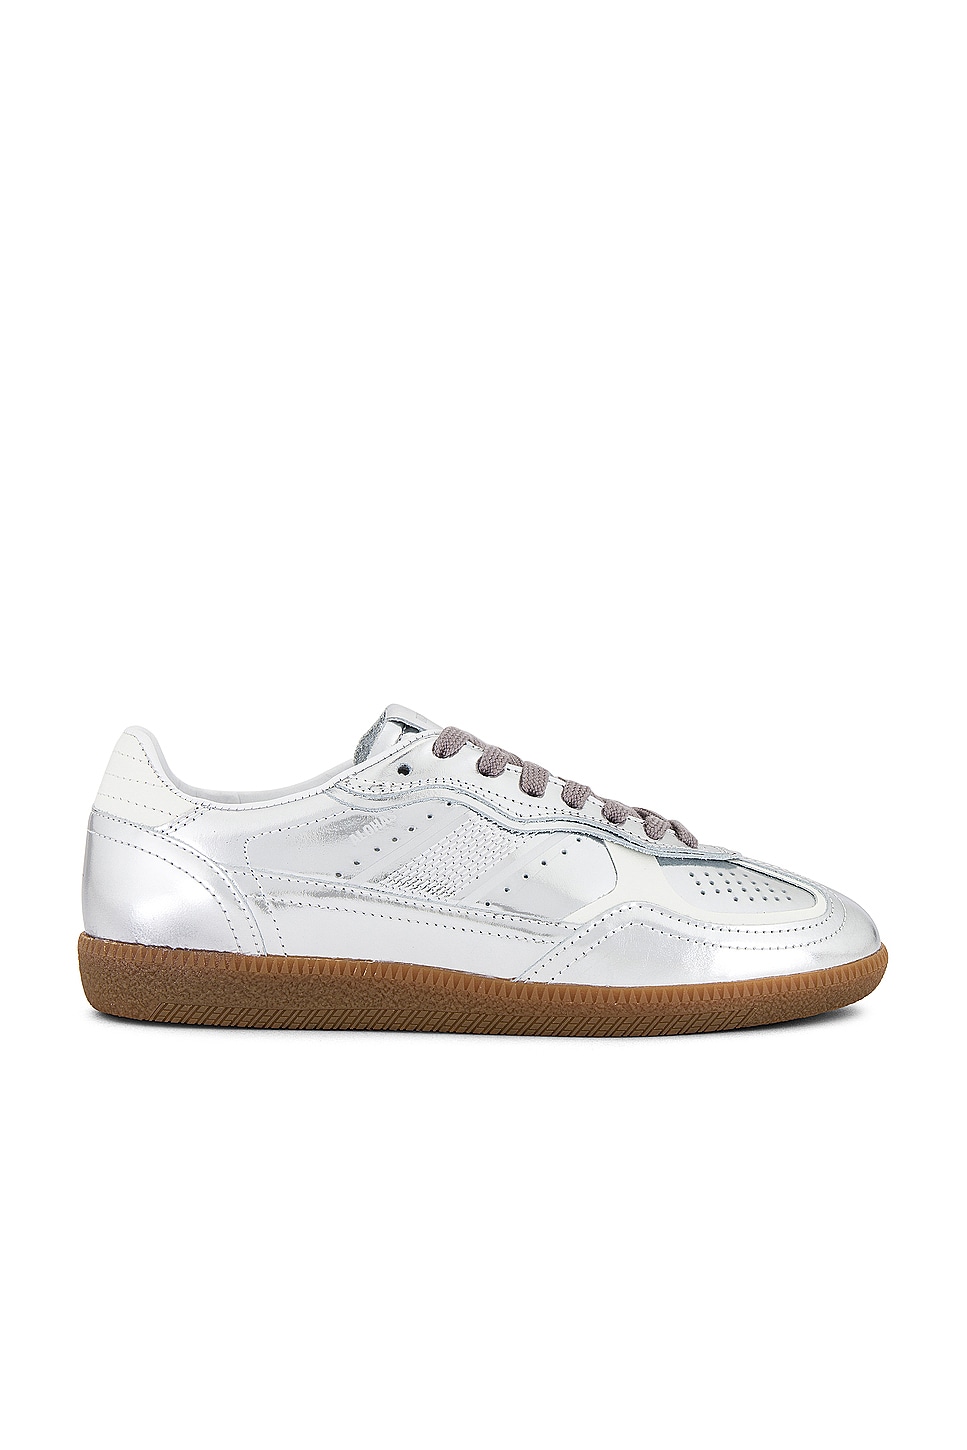 ALOHAS Tb.490 Rife Sneaker in Shimmer Silver